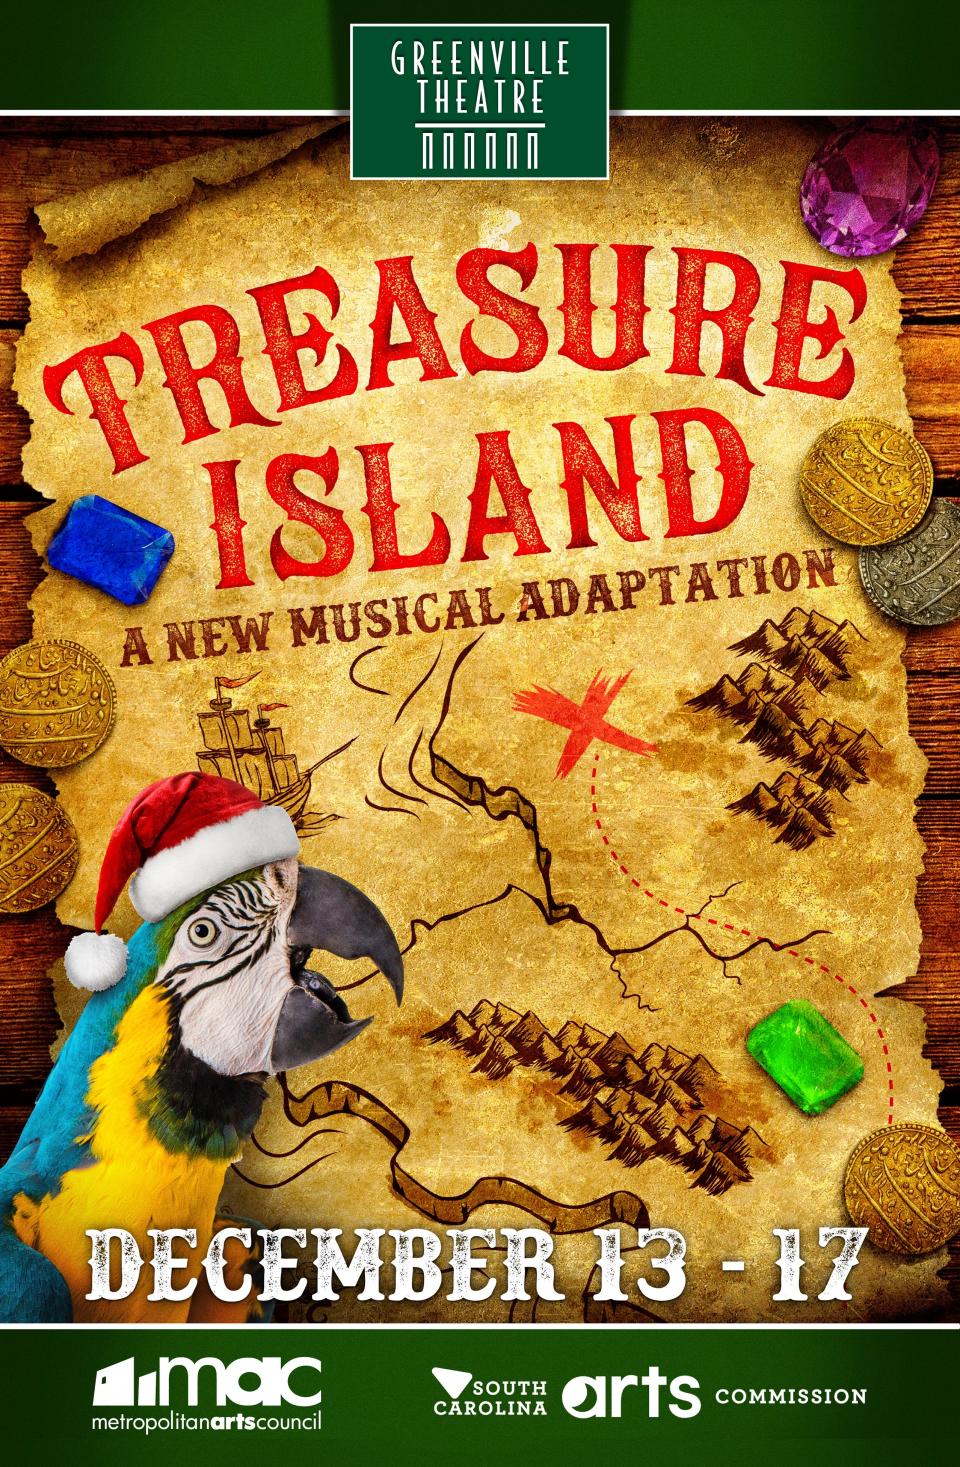 Treasure Island at Greenville Theatre Dec. 13 -17